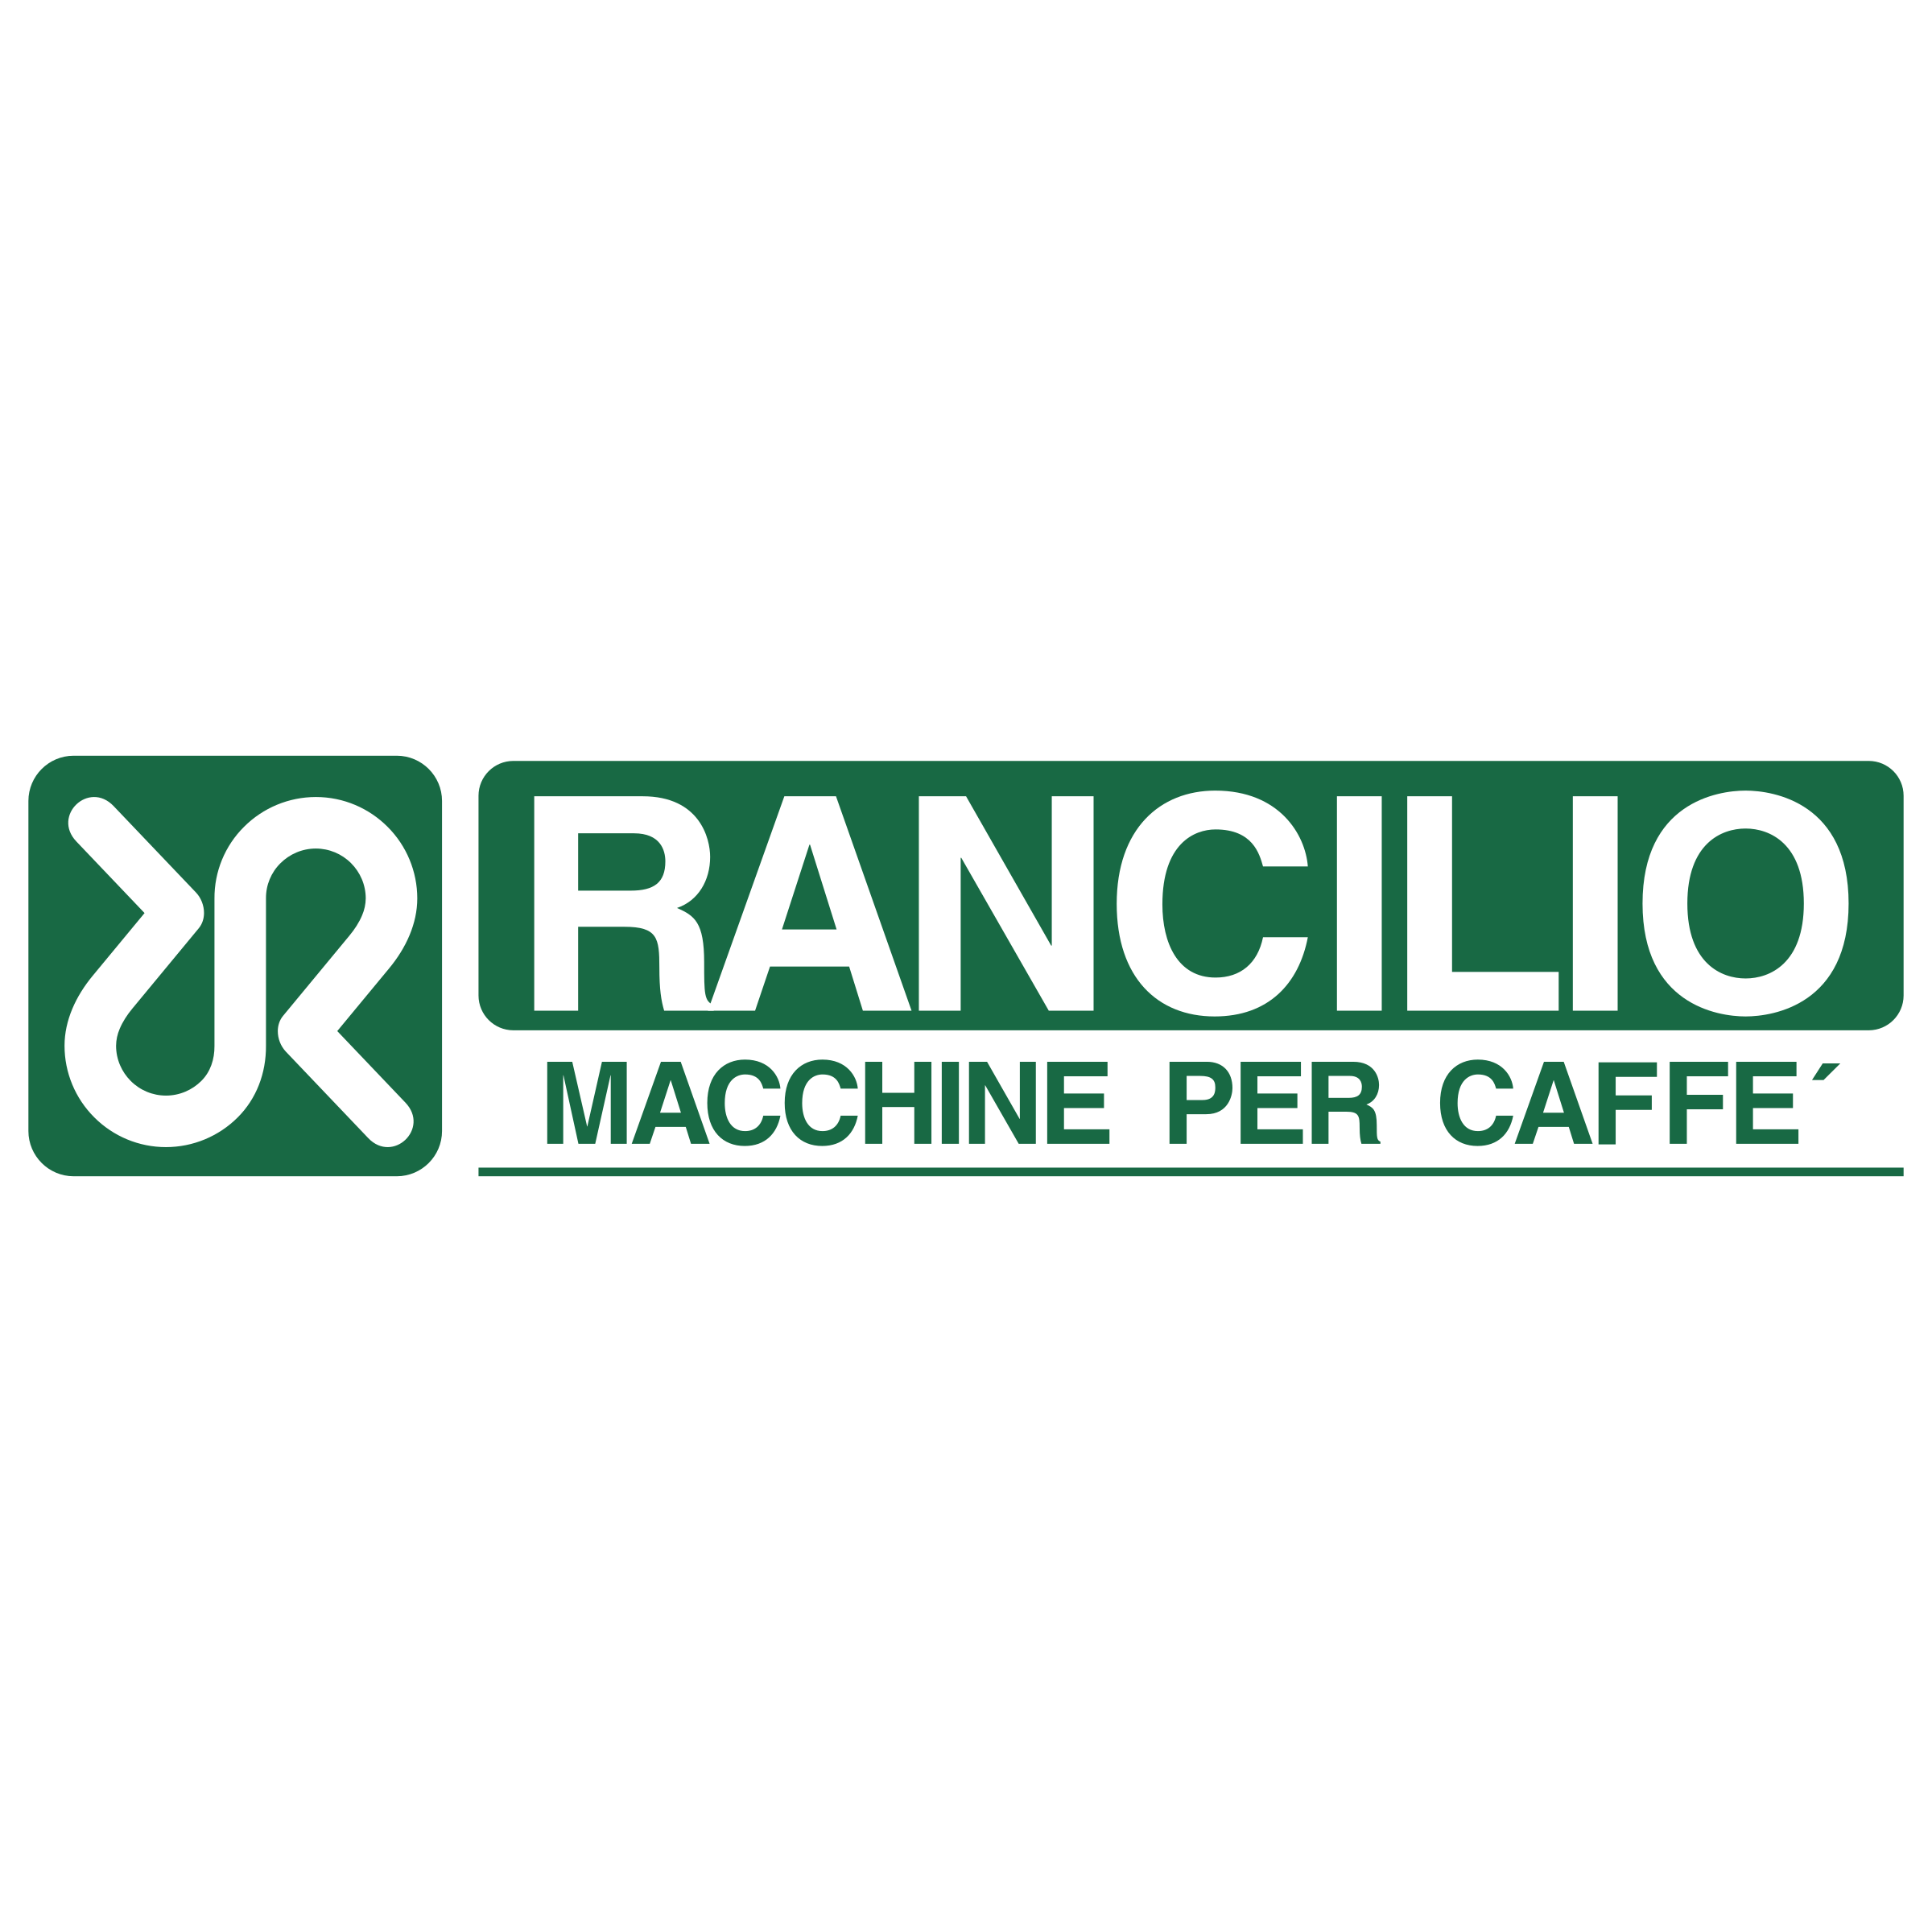 ' - RANCILIO